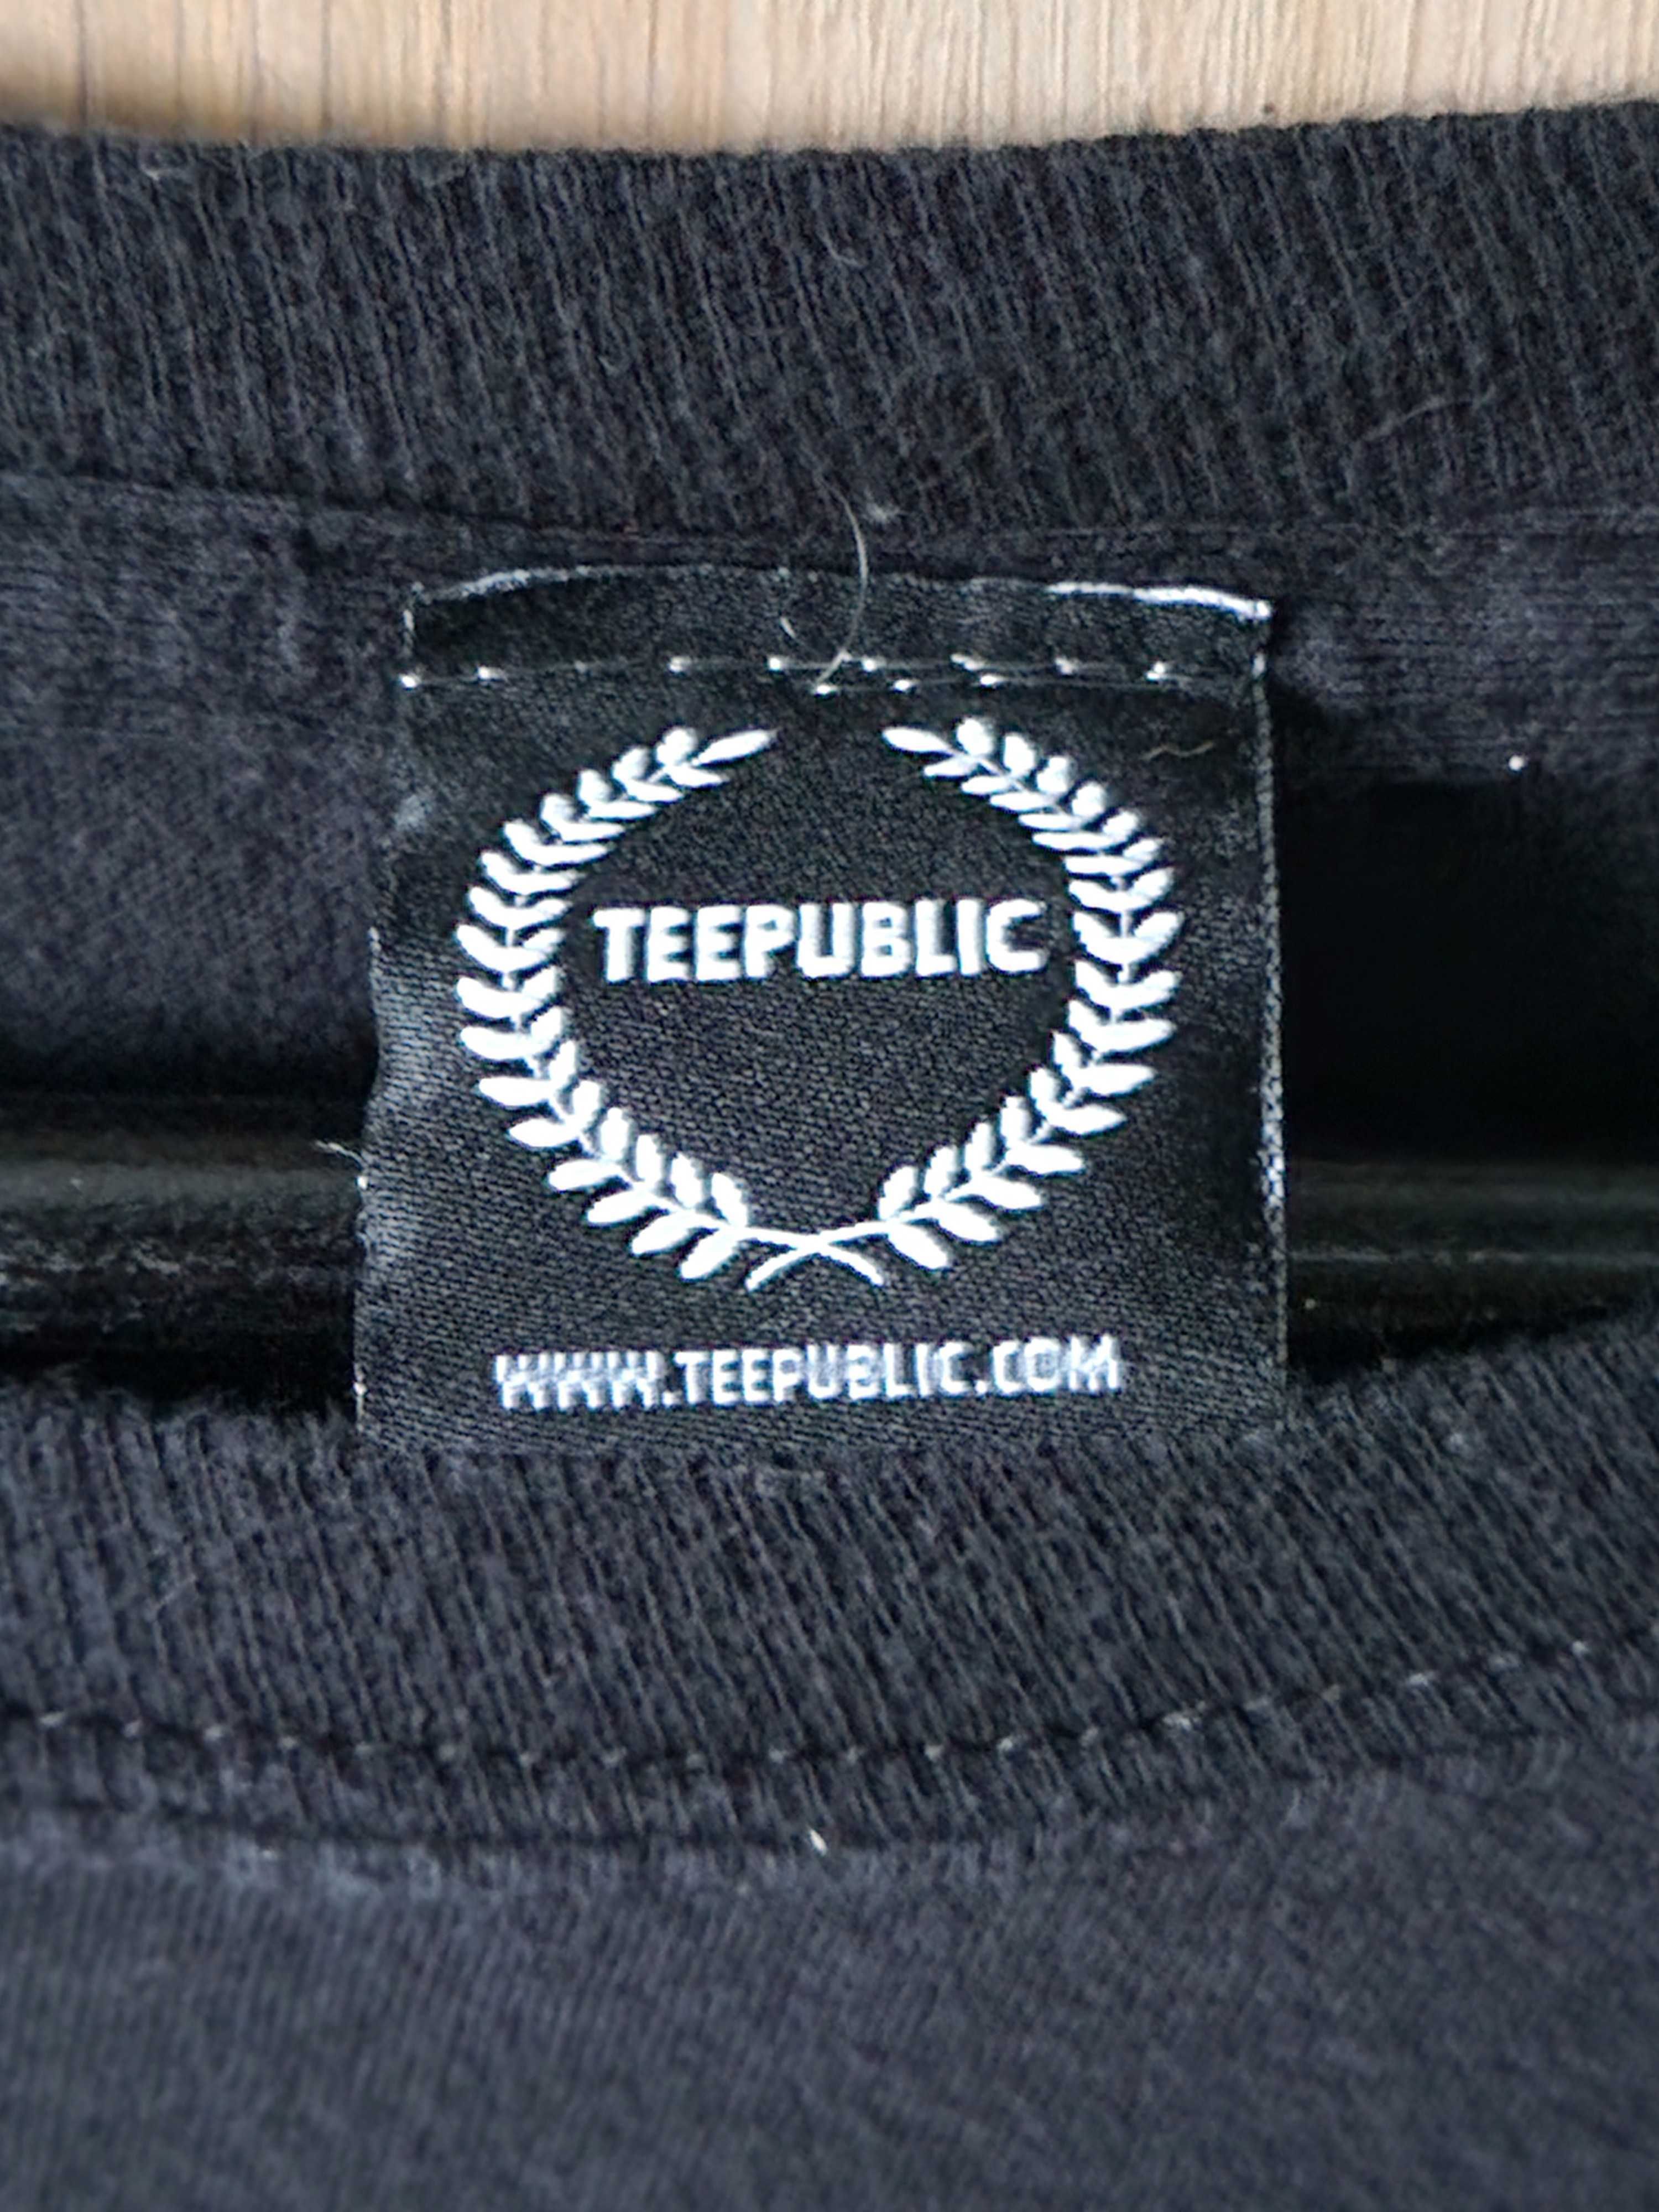 Koszulka męska Teepublic z łosiem, rozmiar XL